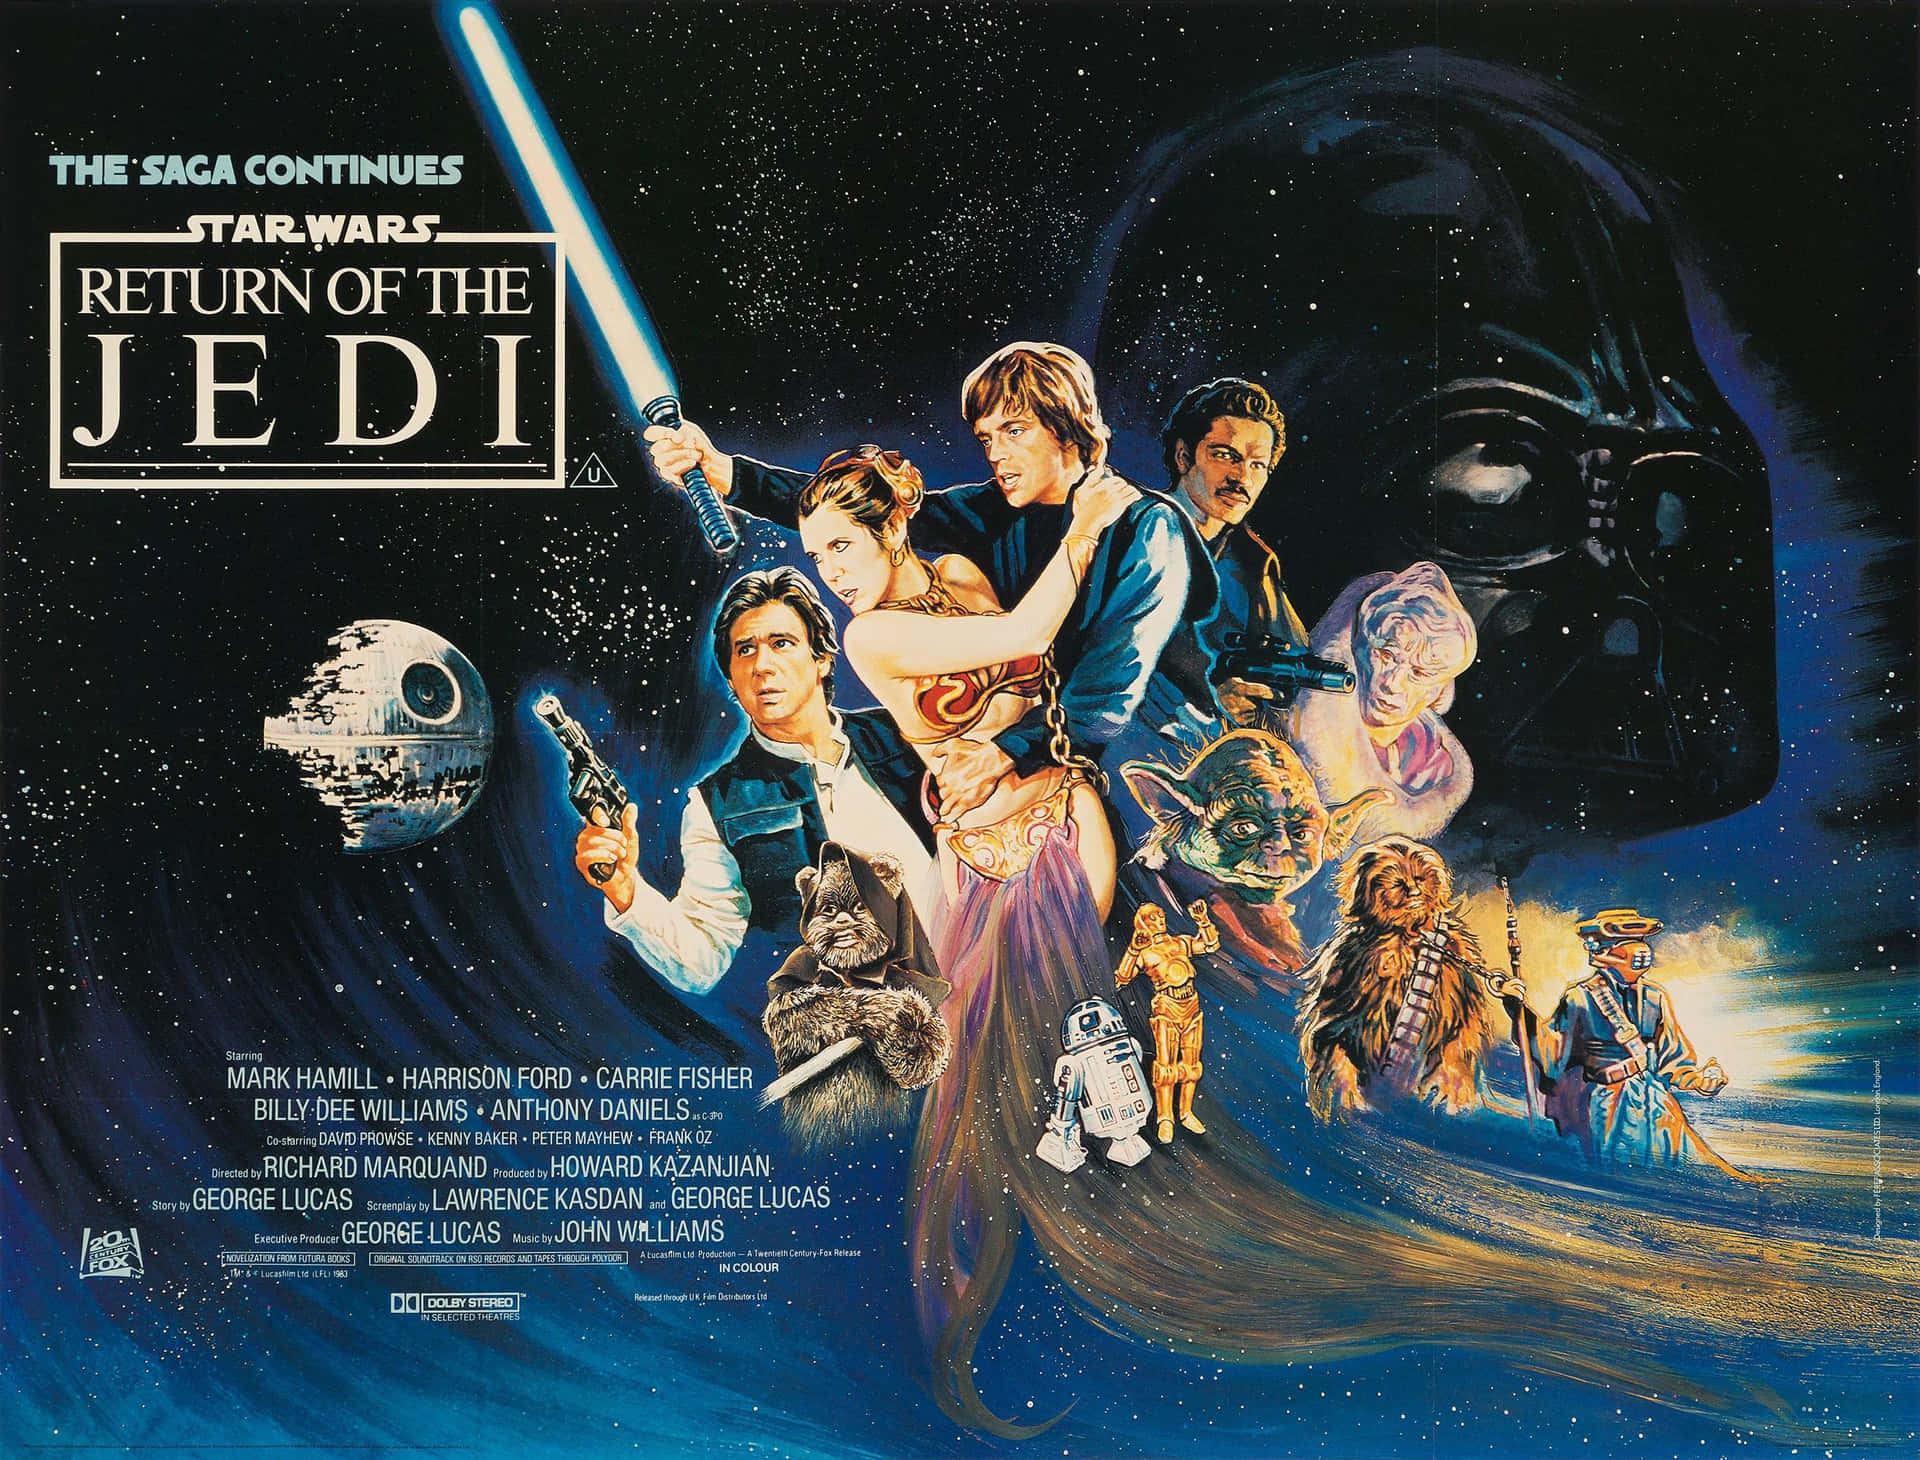 Lukeskywalker Y La Princesa Leia Luchando Contra Los Stormtroopers En El Retorno Del Jedi. Fondo de pantalla